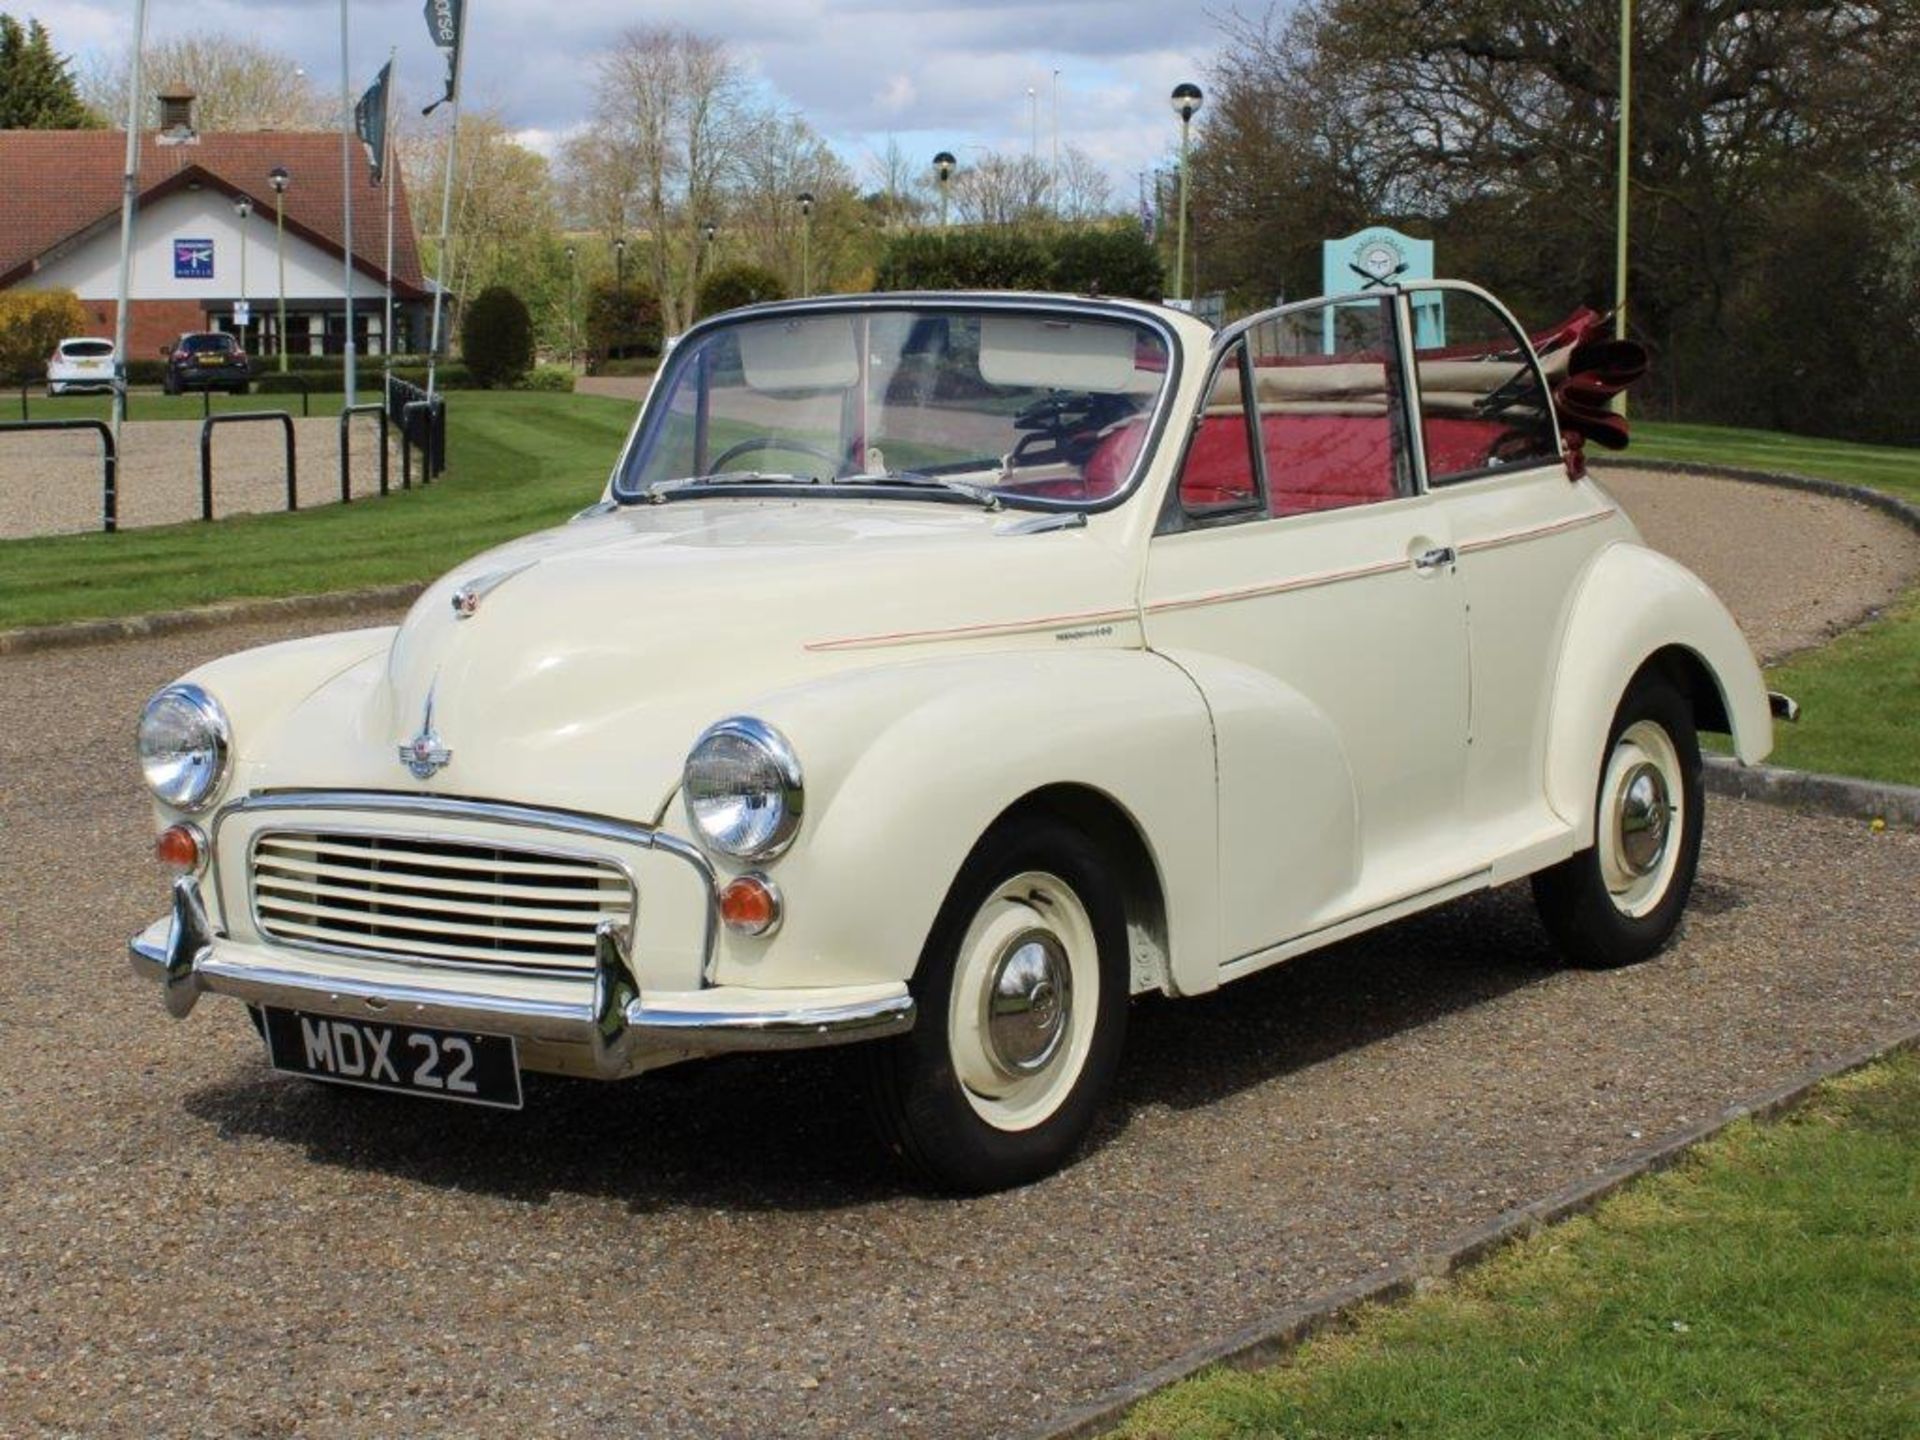 1960 Morris Minor Convertible - Image 3 of 39